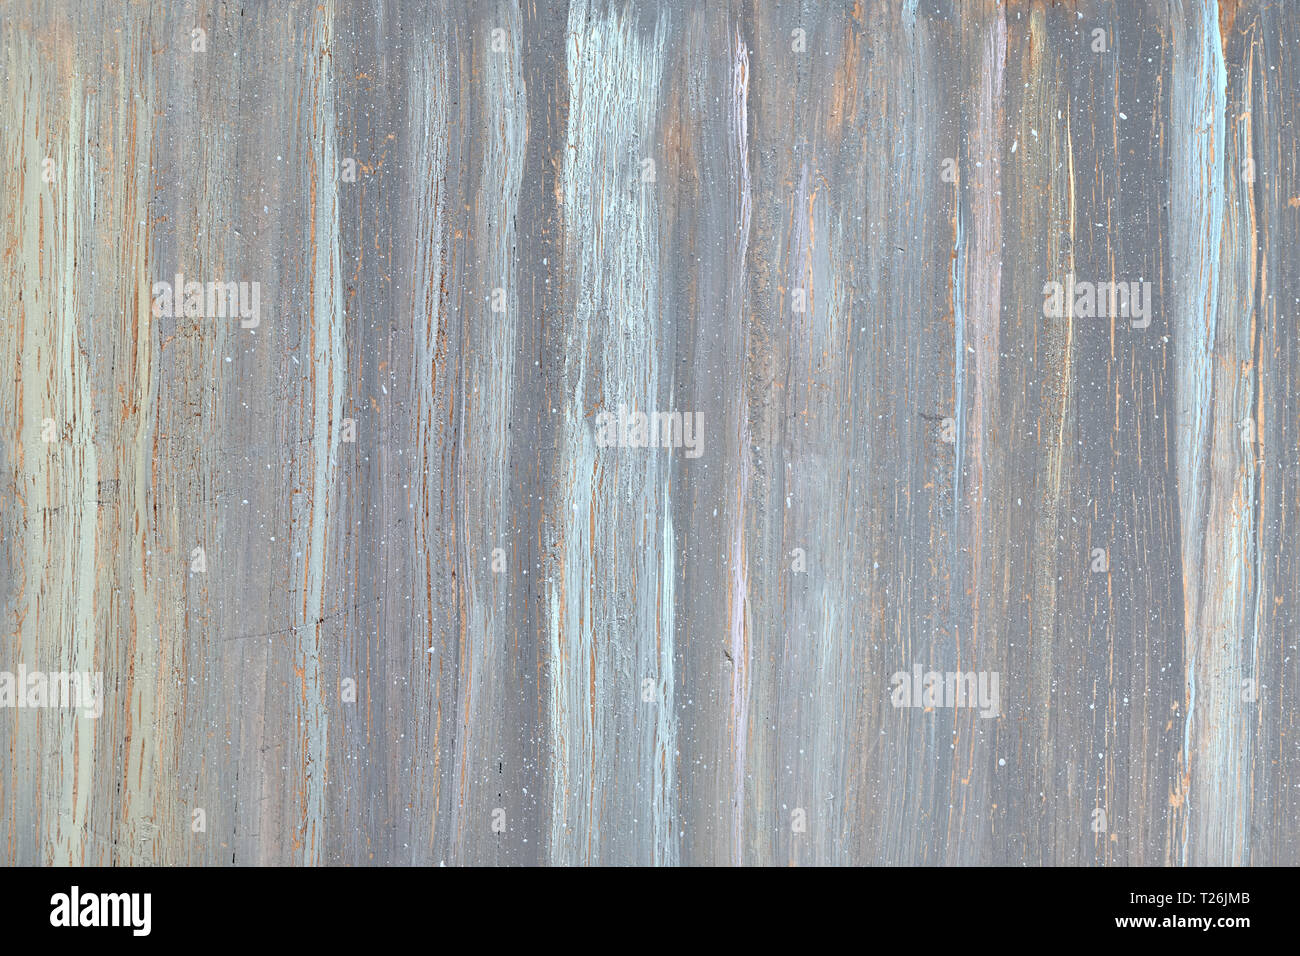 La texture en bois gris avec cracled la peinture, grunge de surface avec crucks, copiez-space Banque D'Images